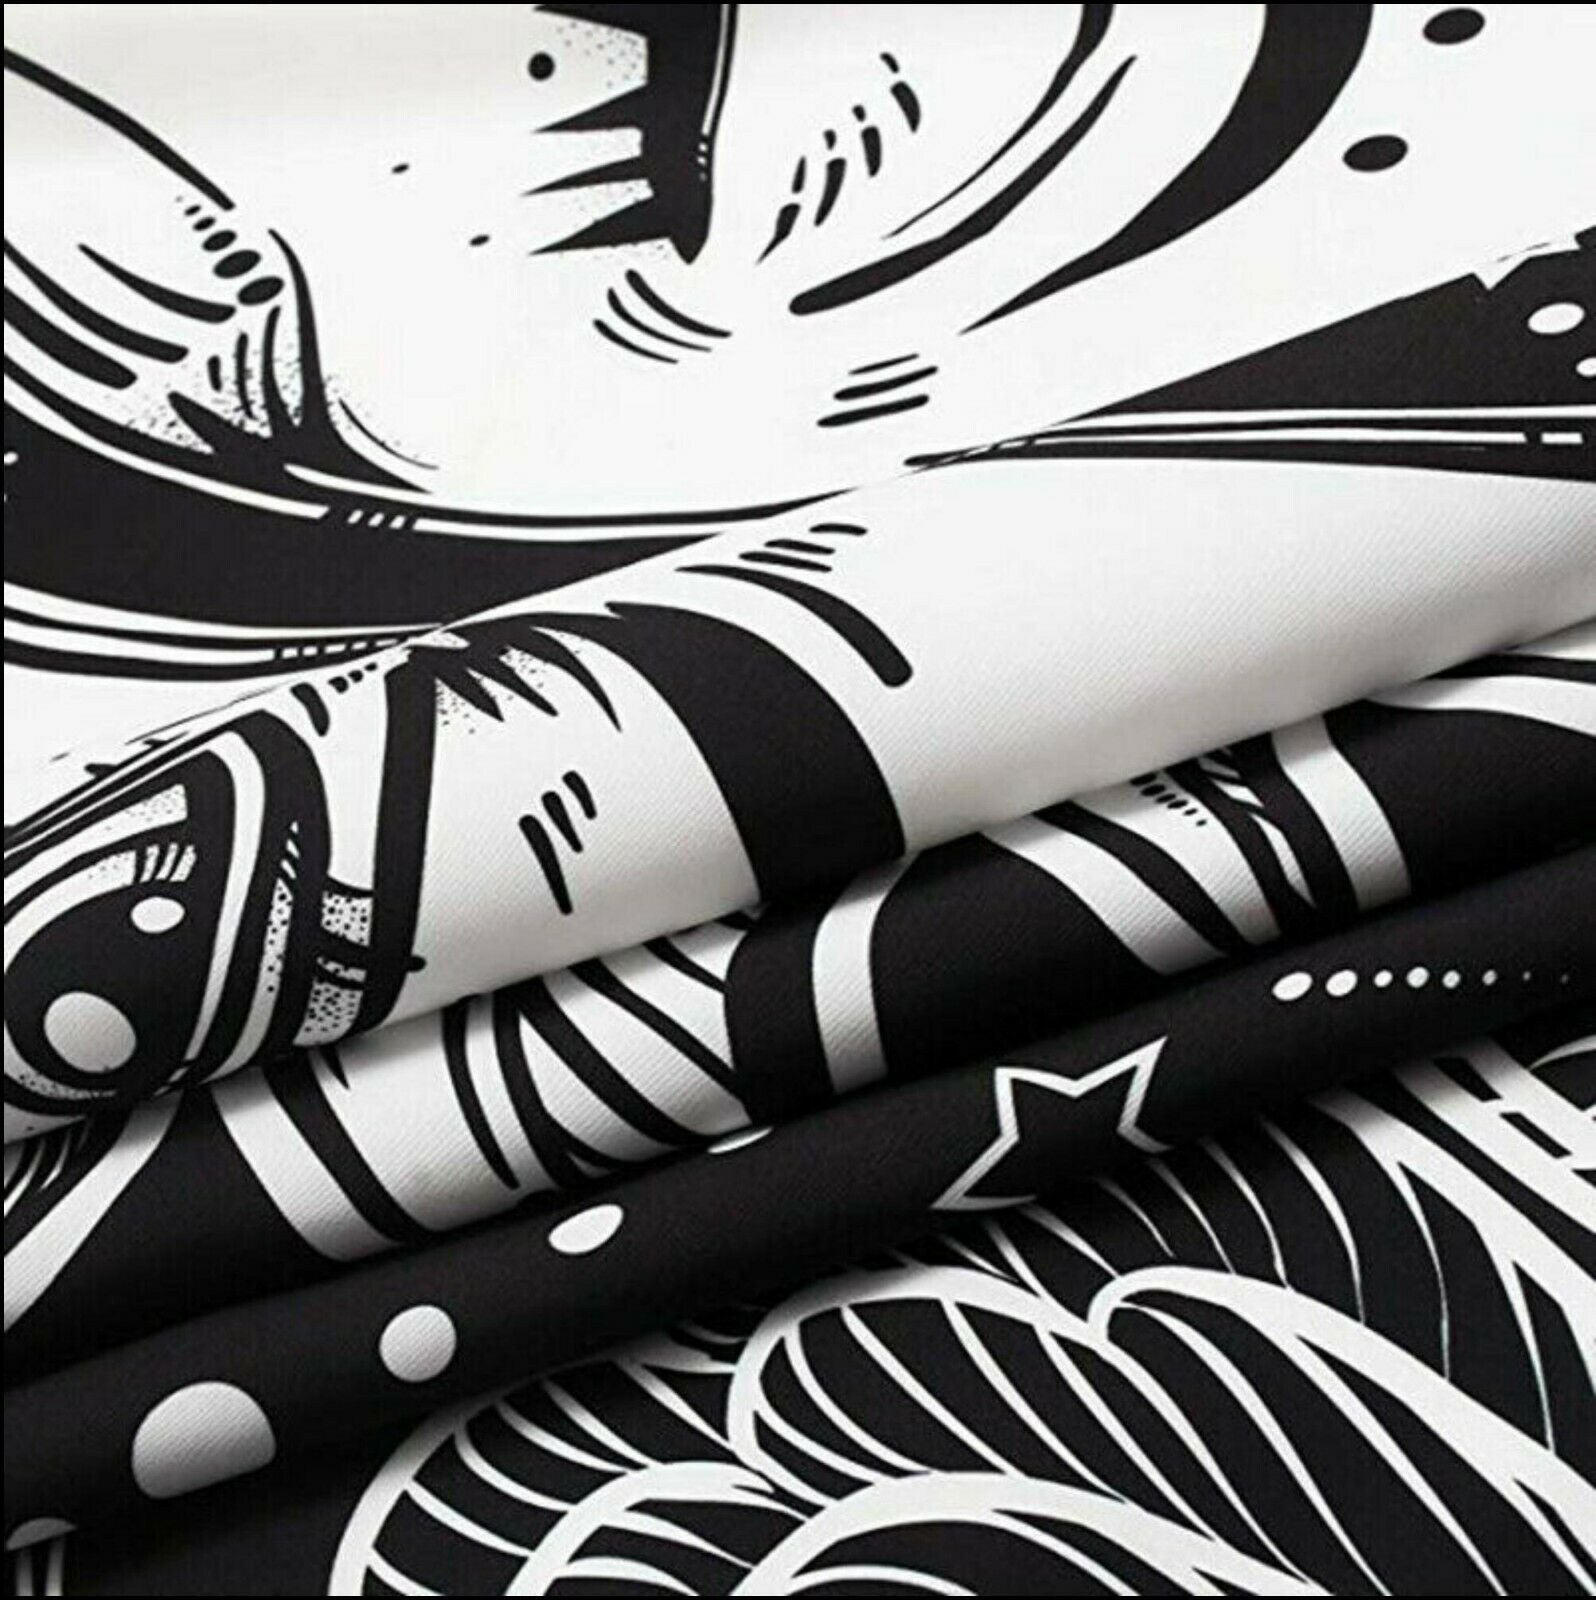 3D Art Flower 3400 Skromova Marina Tapestry Hanging Cloth Hang